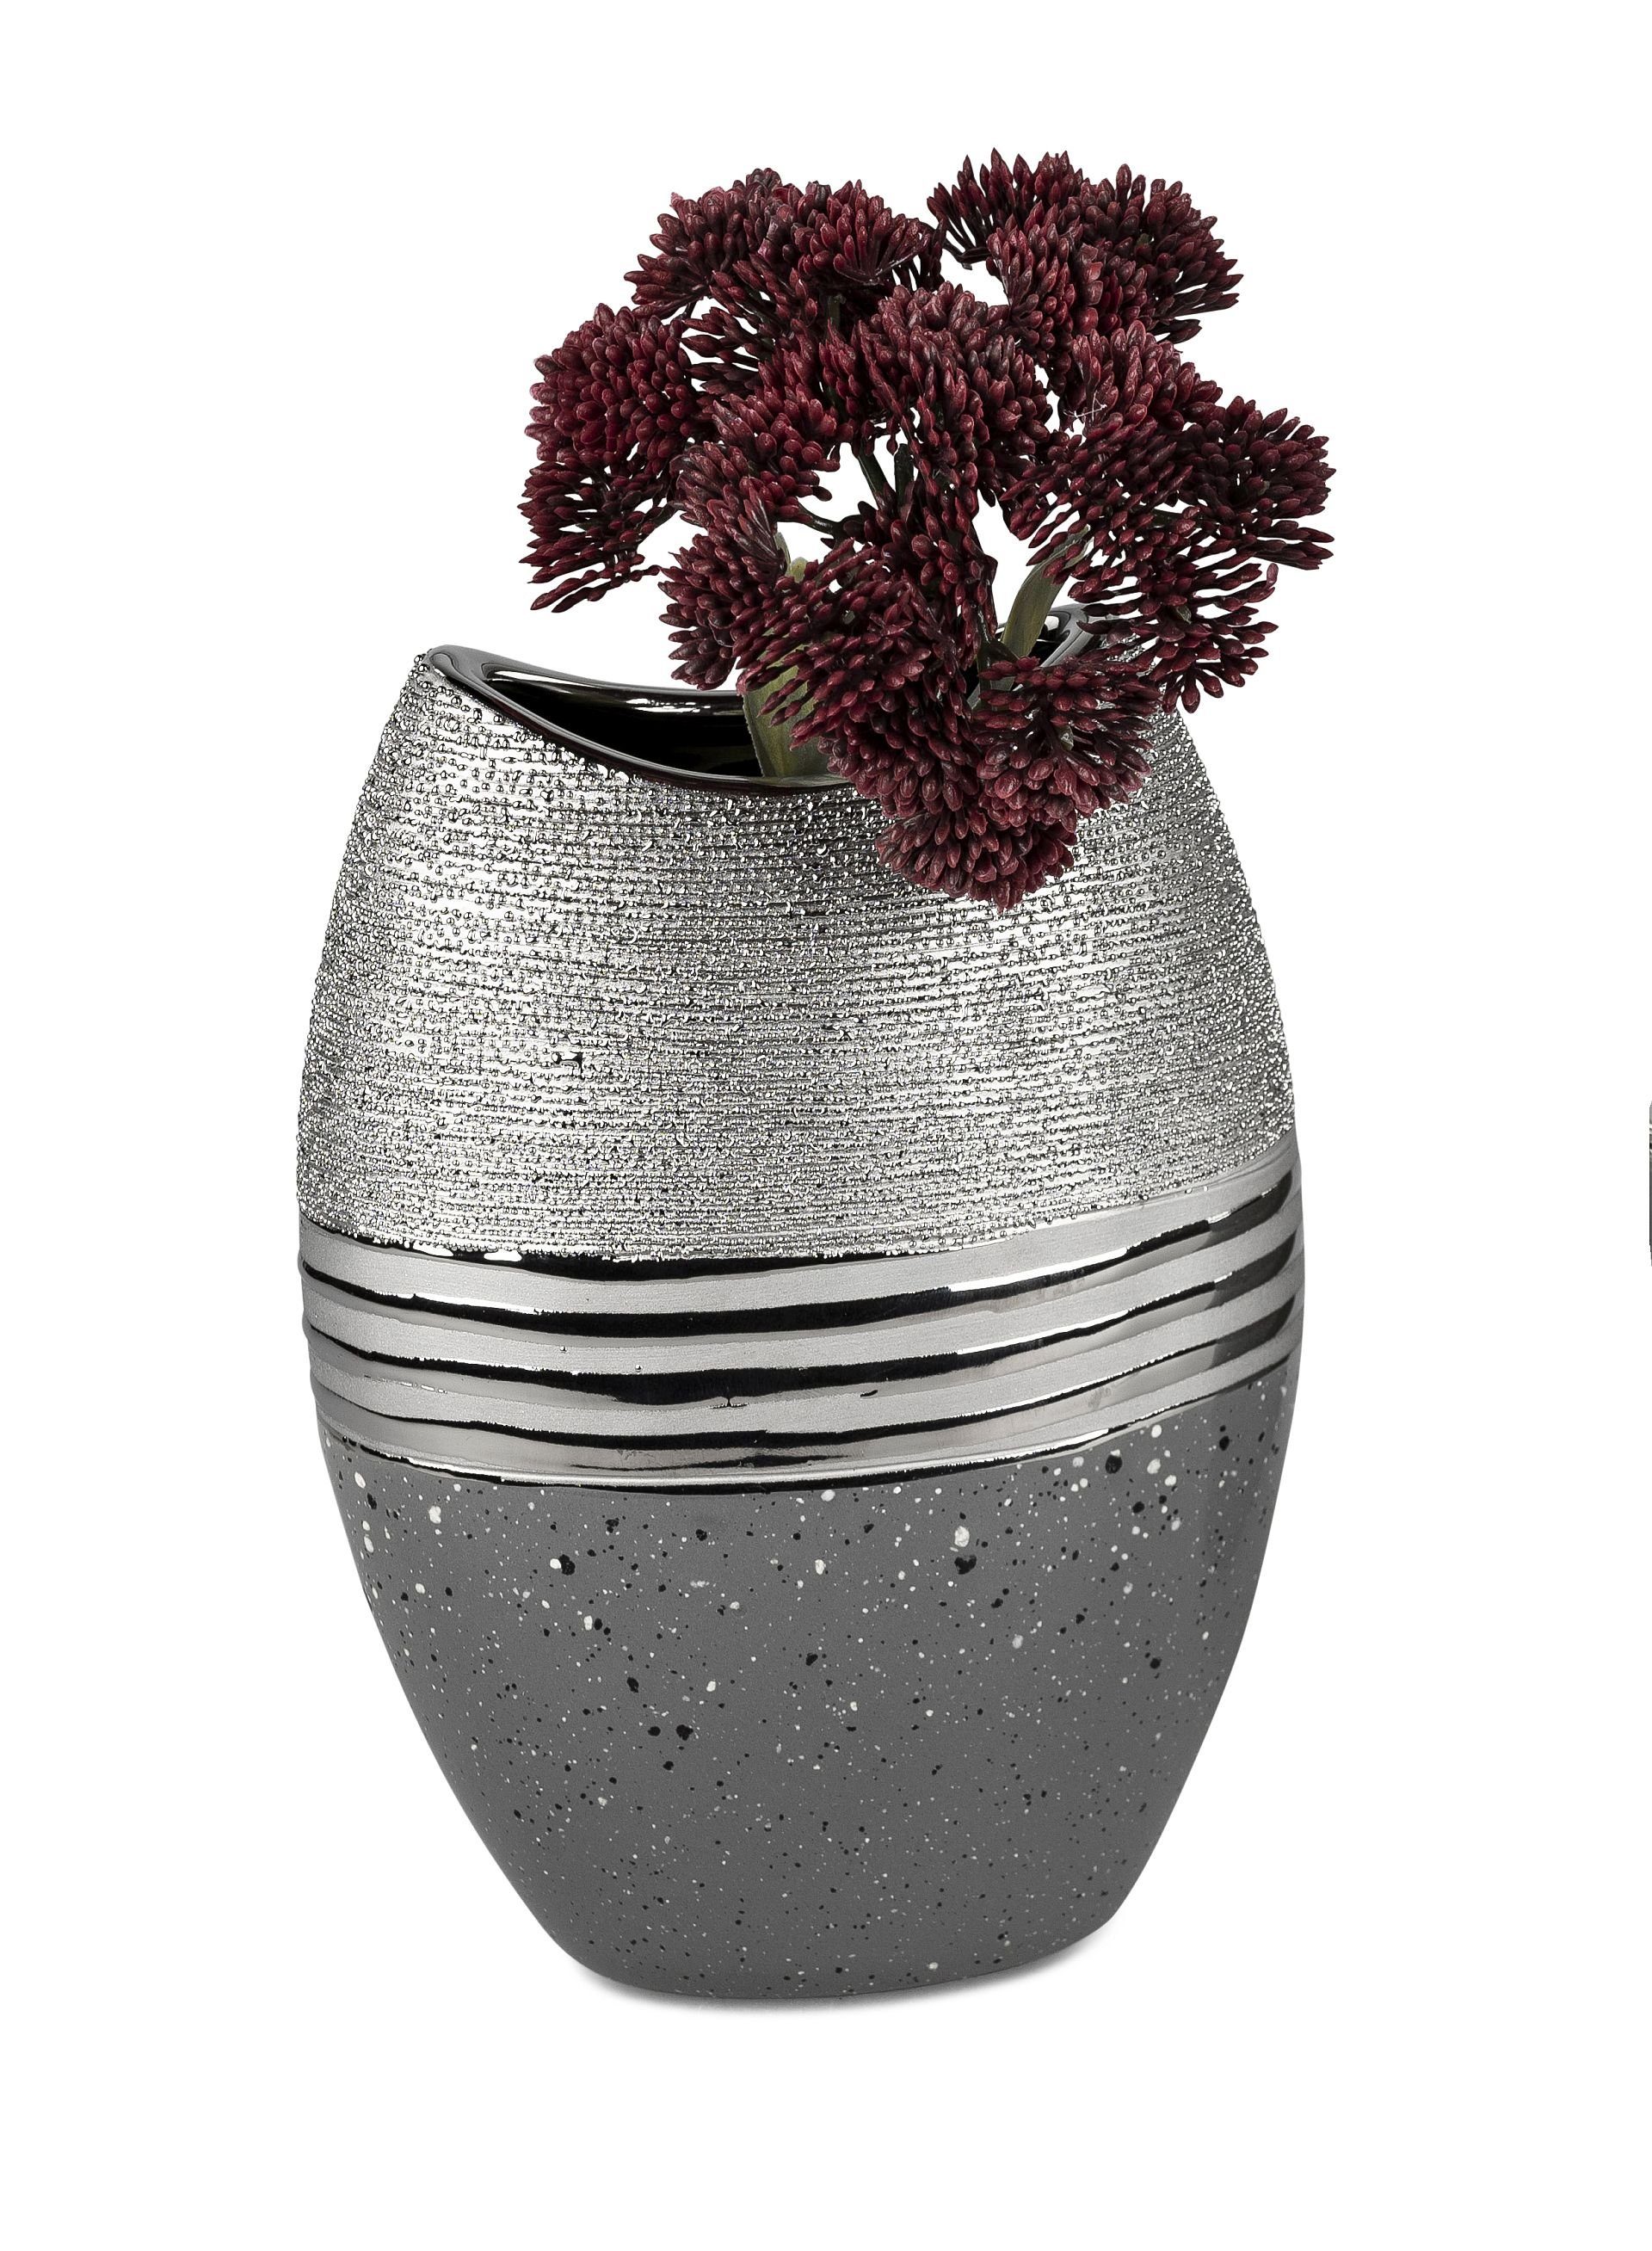 Small-Preis Dekovase Formano Vase Tischvase in silber - grau verschiedene Modelle, aus Keramik untere Hälfte ist glasiert